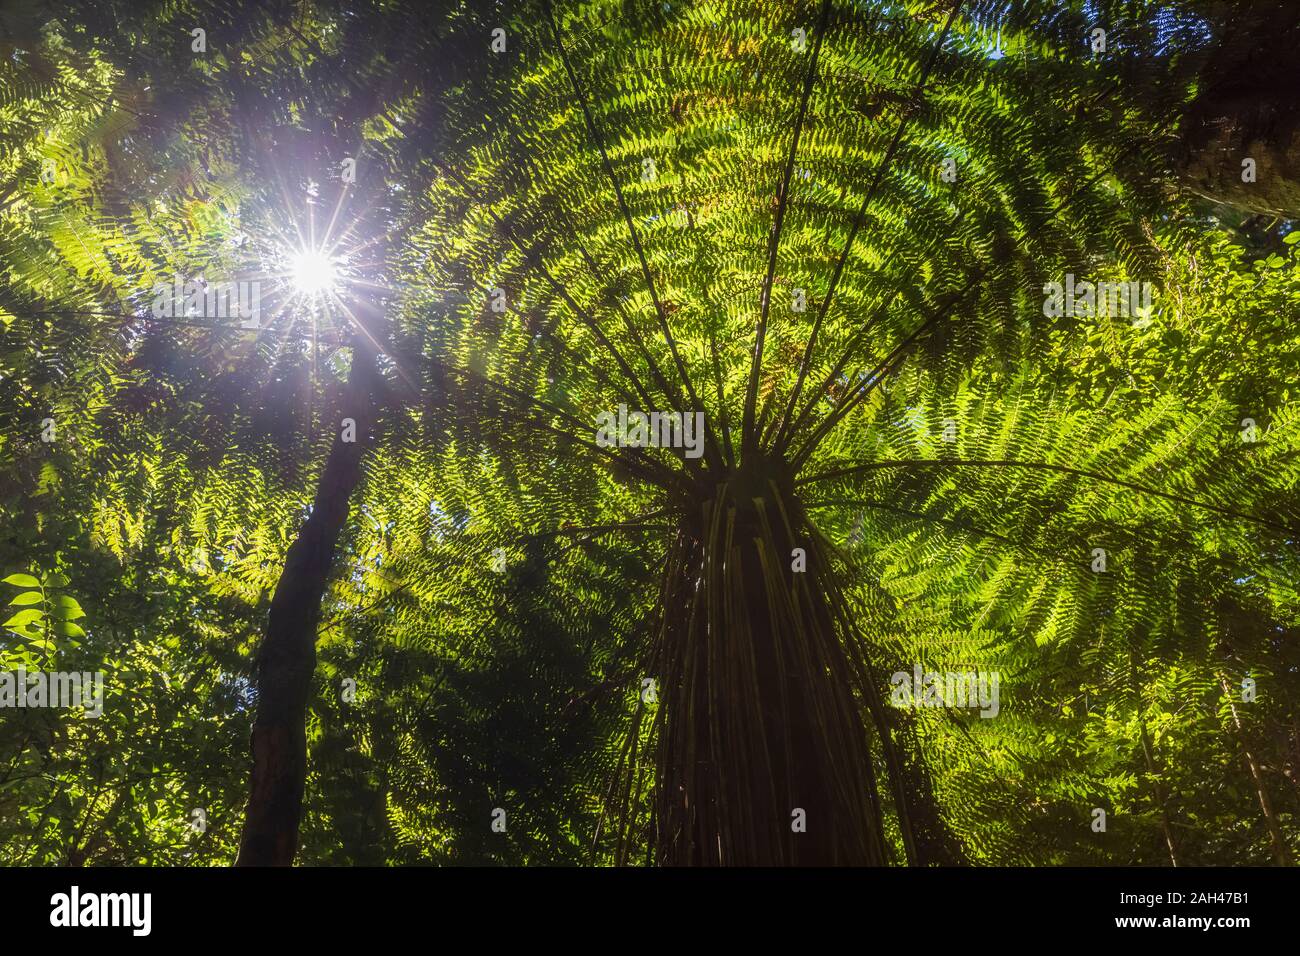 Nouvelle Zélande, île du Nord, le soleil brille à travers les feuilles des fougères arborescentes dans Pihanga Scenic Reserve Banque D'Images